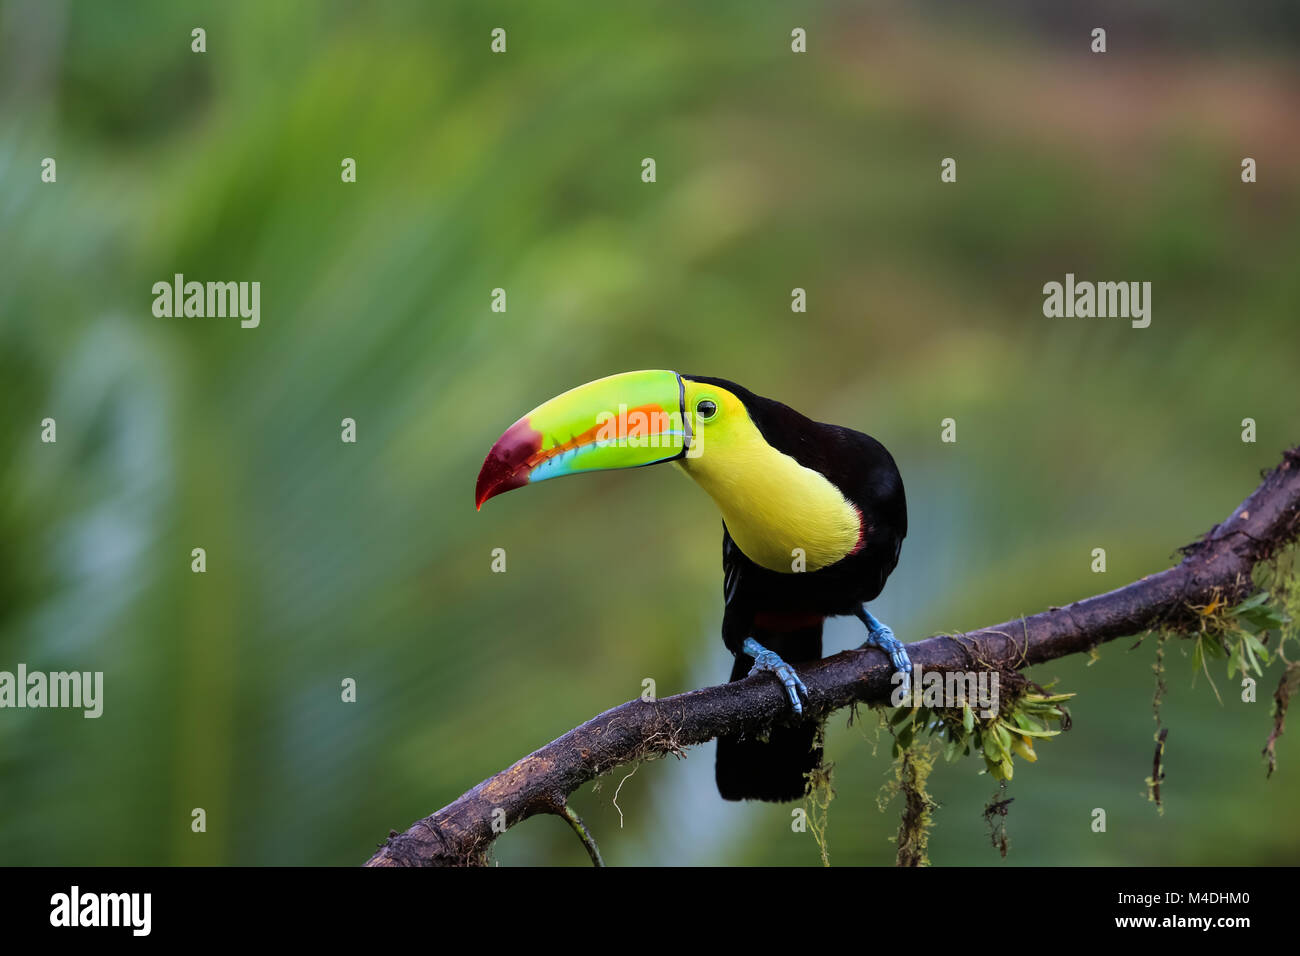 Chiglia fatturati toucan nella foresta pluviale seduto su un ramo Foto Stock